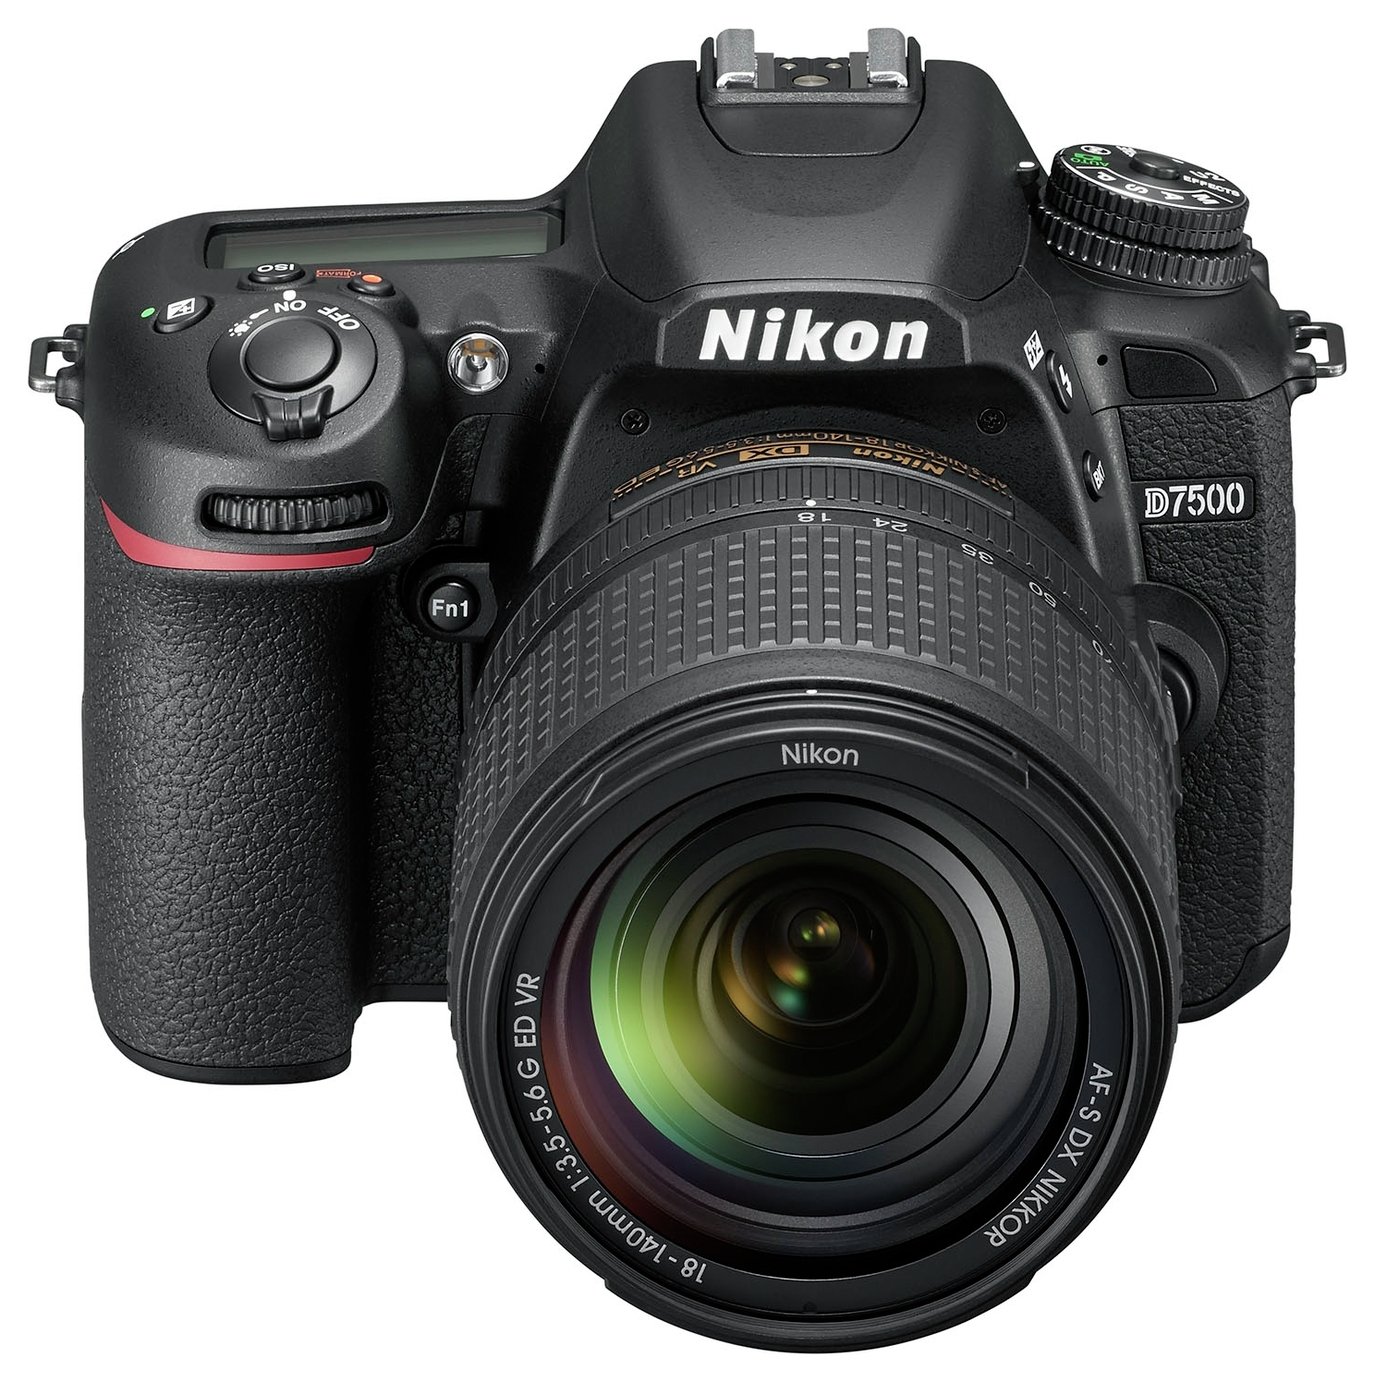 Nikon D7500 DSLR Camera with AF-S DX 18-140mm VR Lens Review